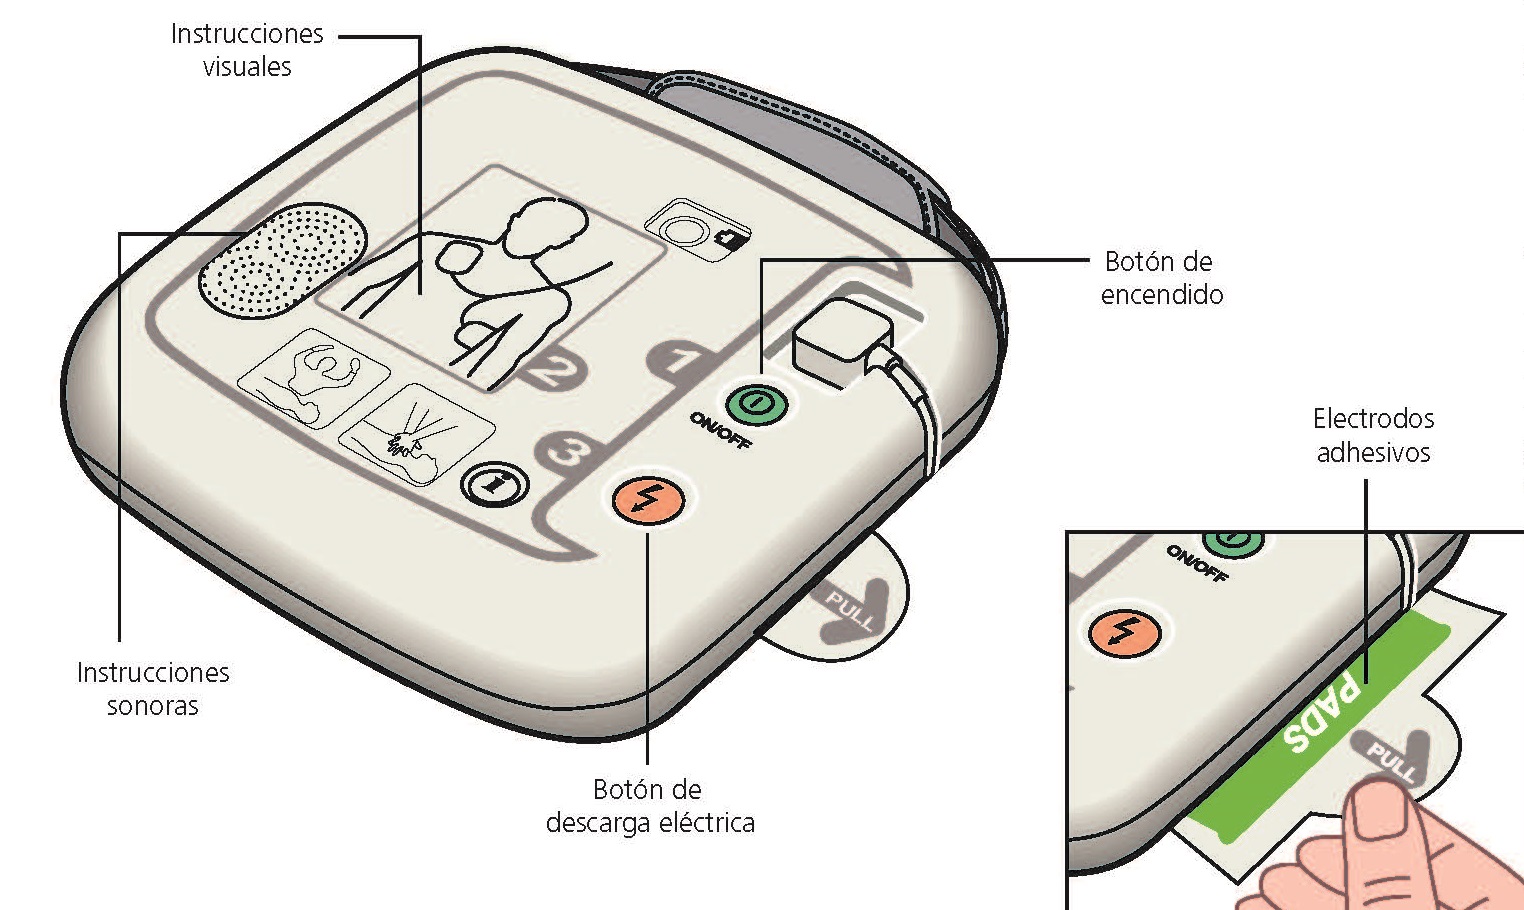 Cómo se usa un desfibrilador externo automático (DEA) 